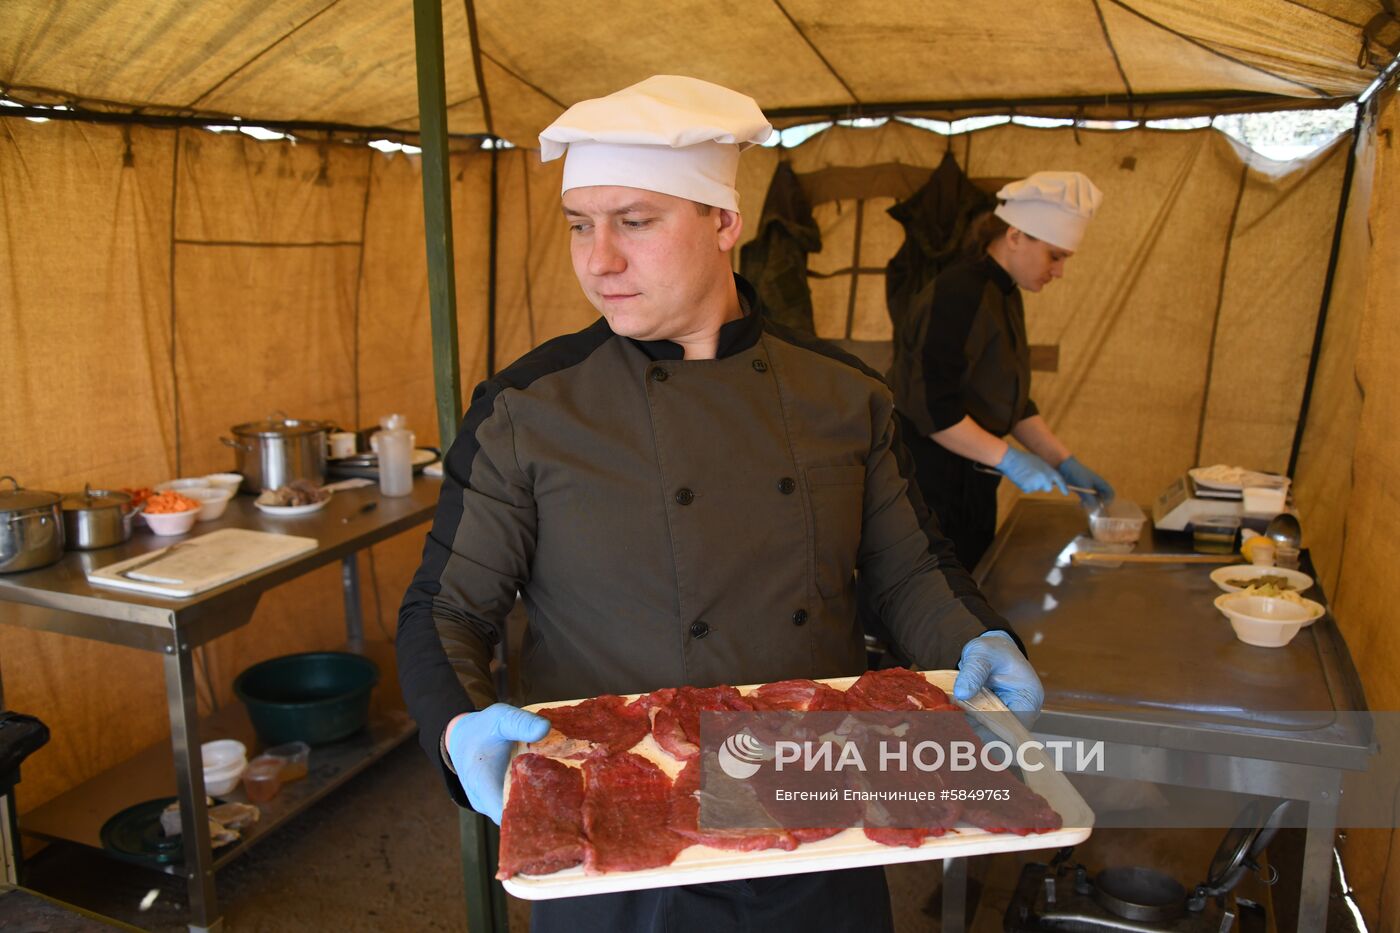 Конкурс "Полевая кухня" в Забайкалье